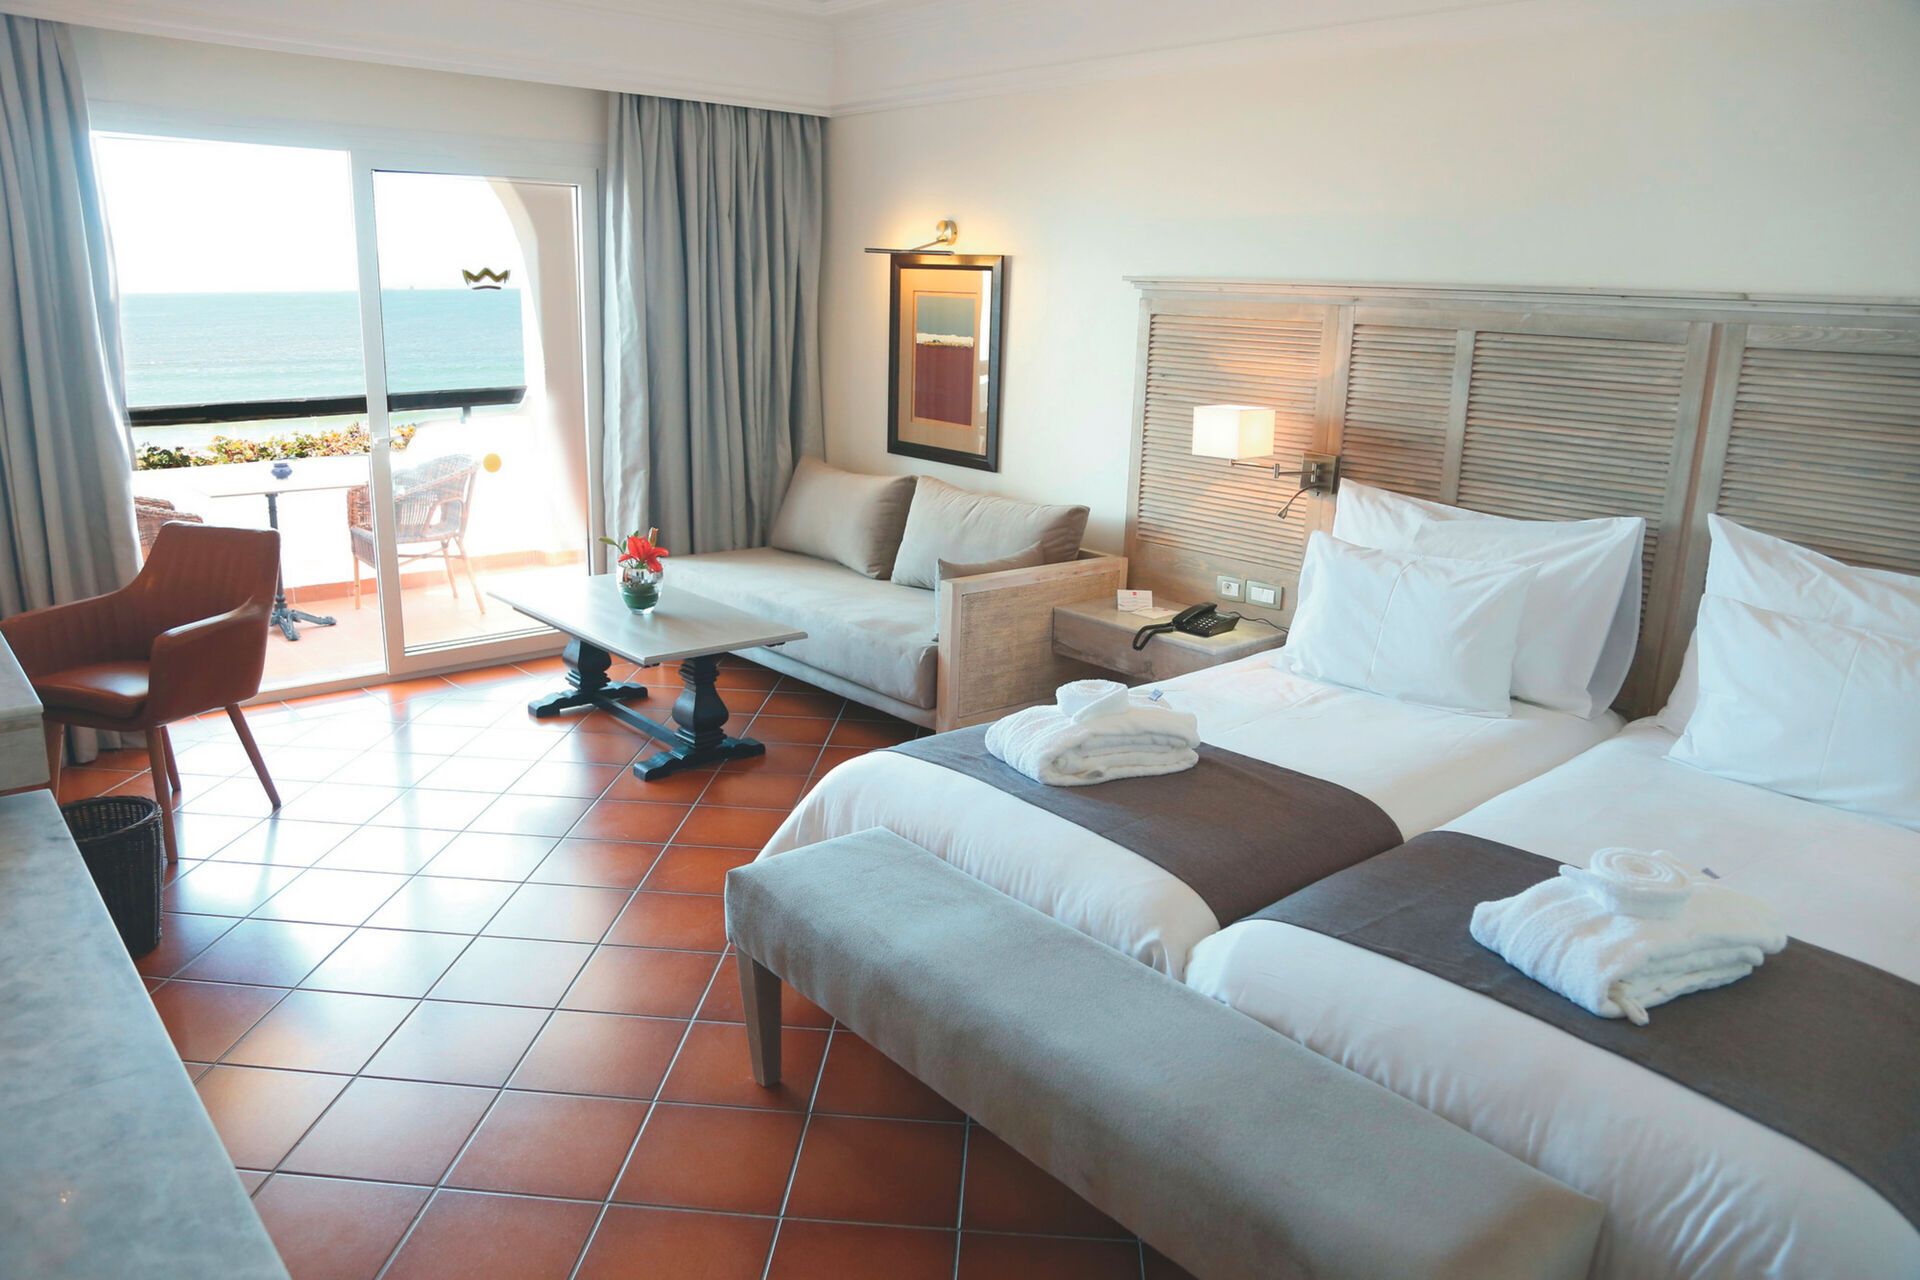 Maroc - Agadir - Hotel Riu Tikida Beach 4* - Adult Only